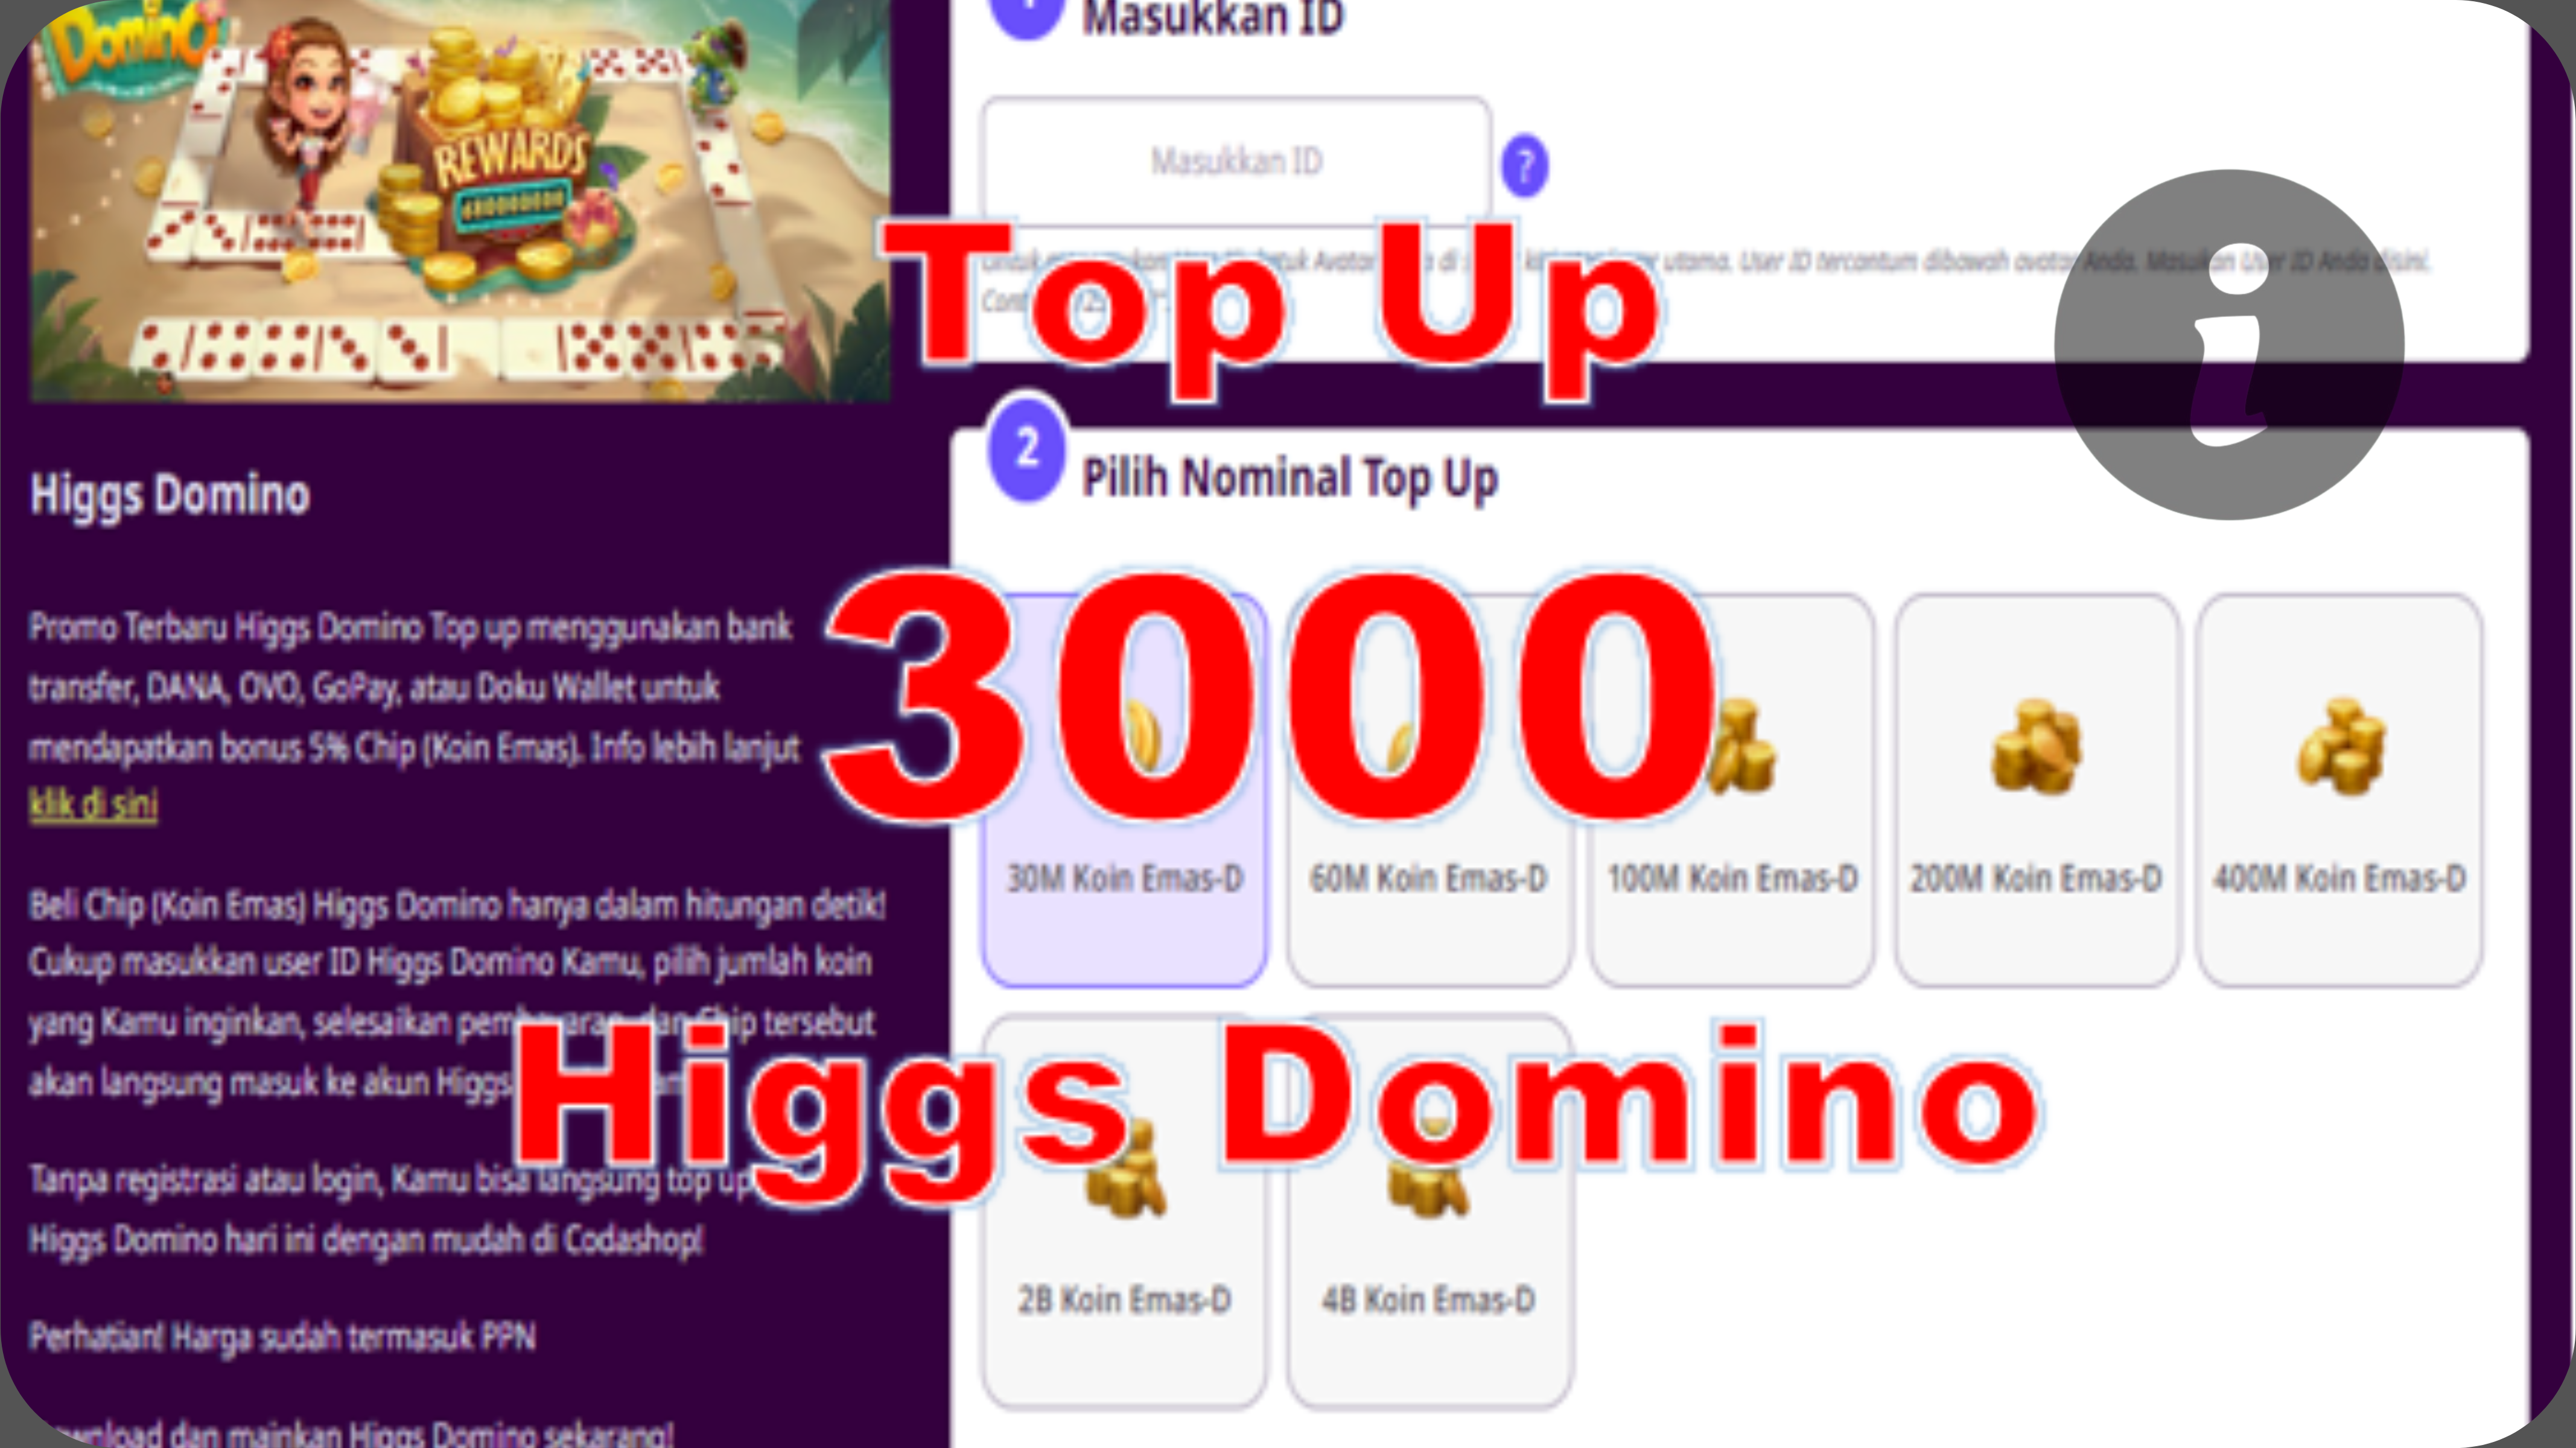 Tips Top Up Higgs Domino 3000 tanpa Pajak Terjangkau Aman